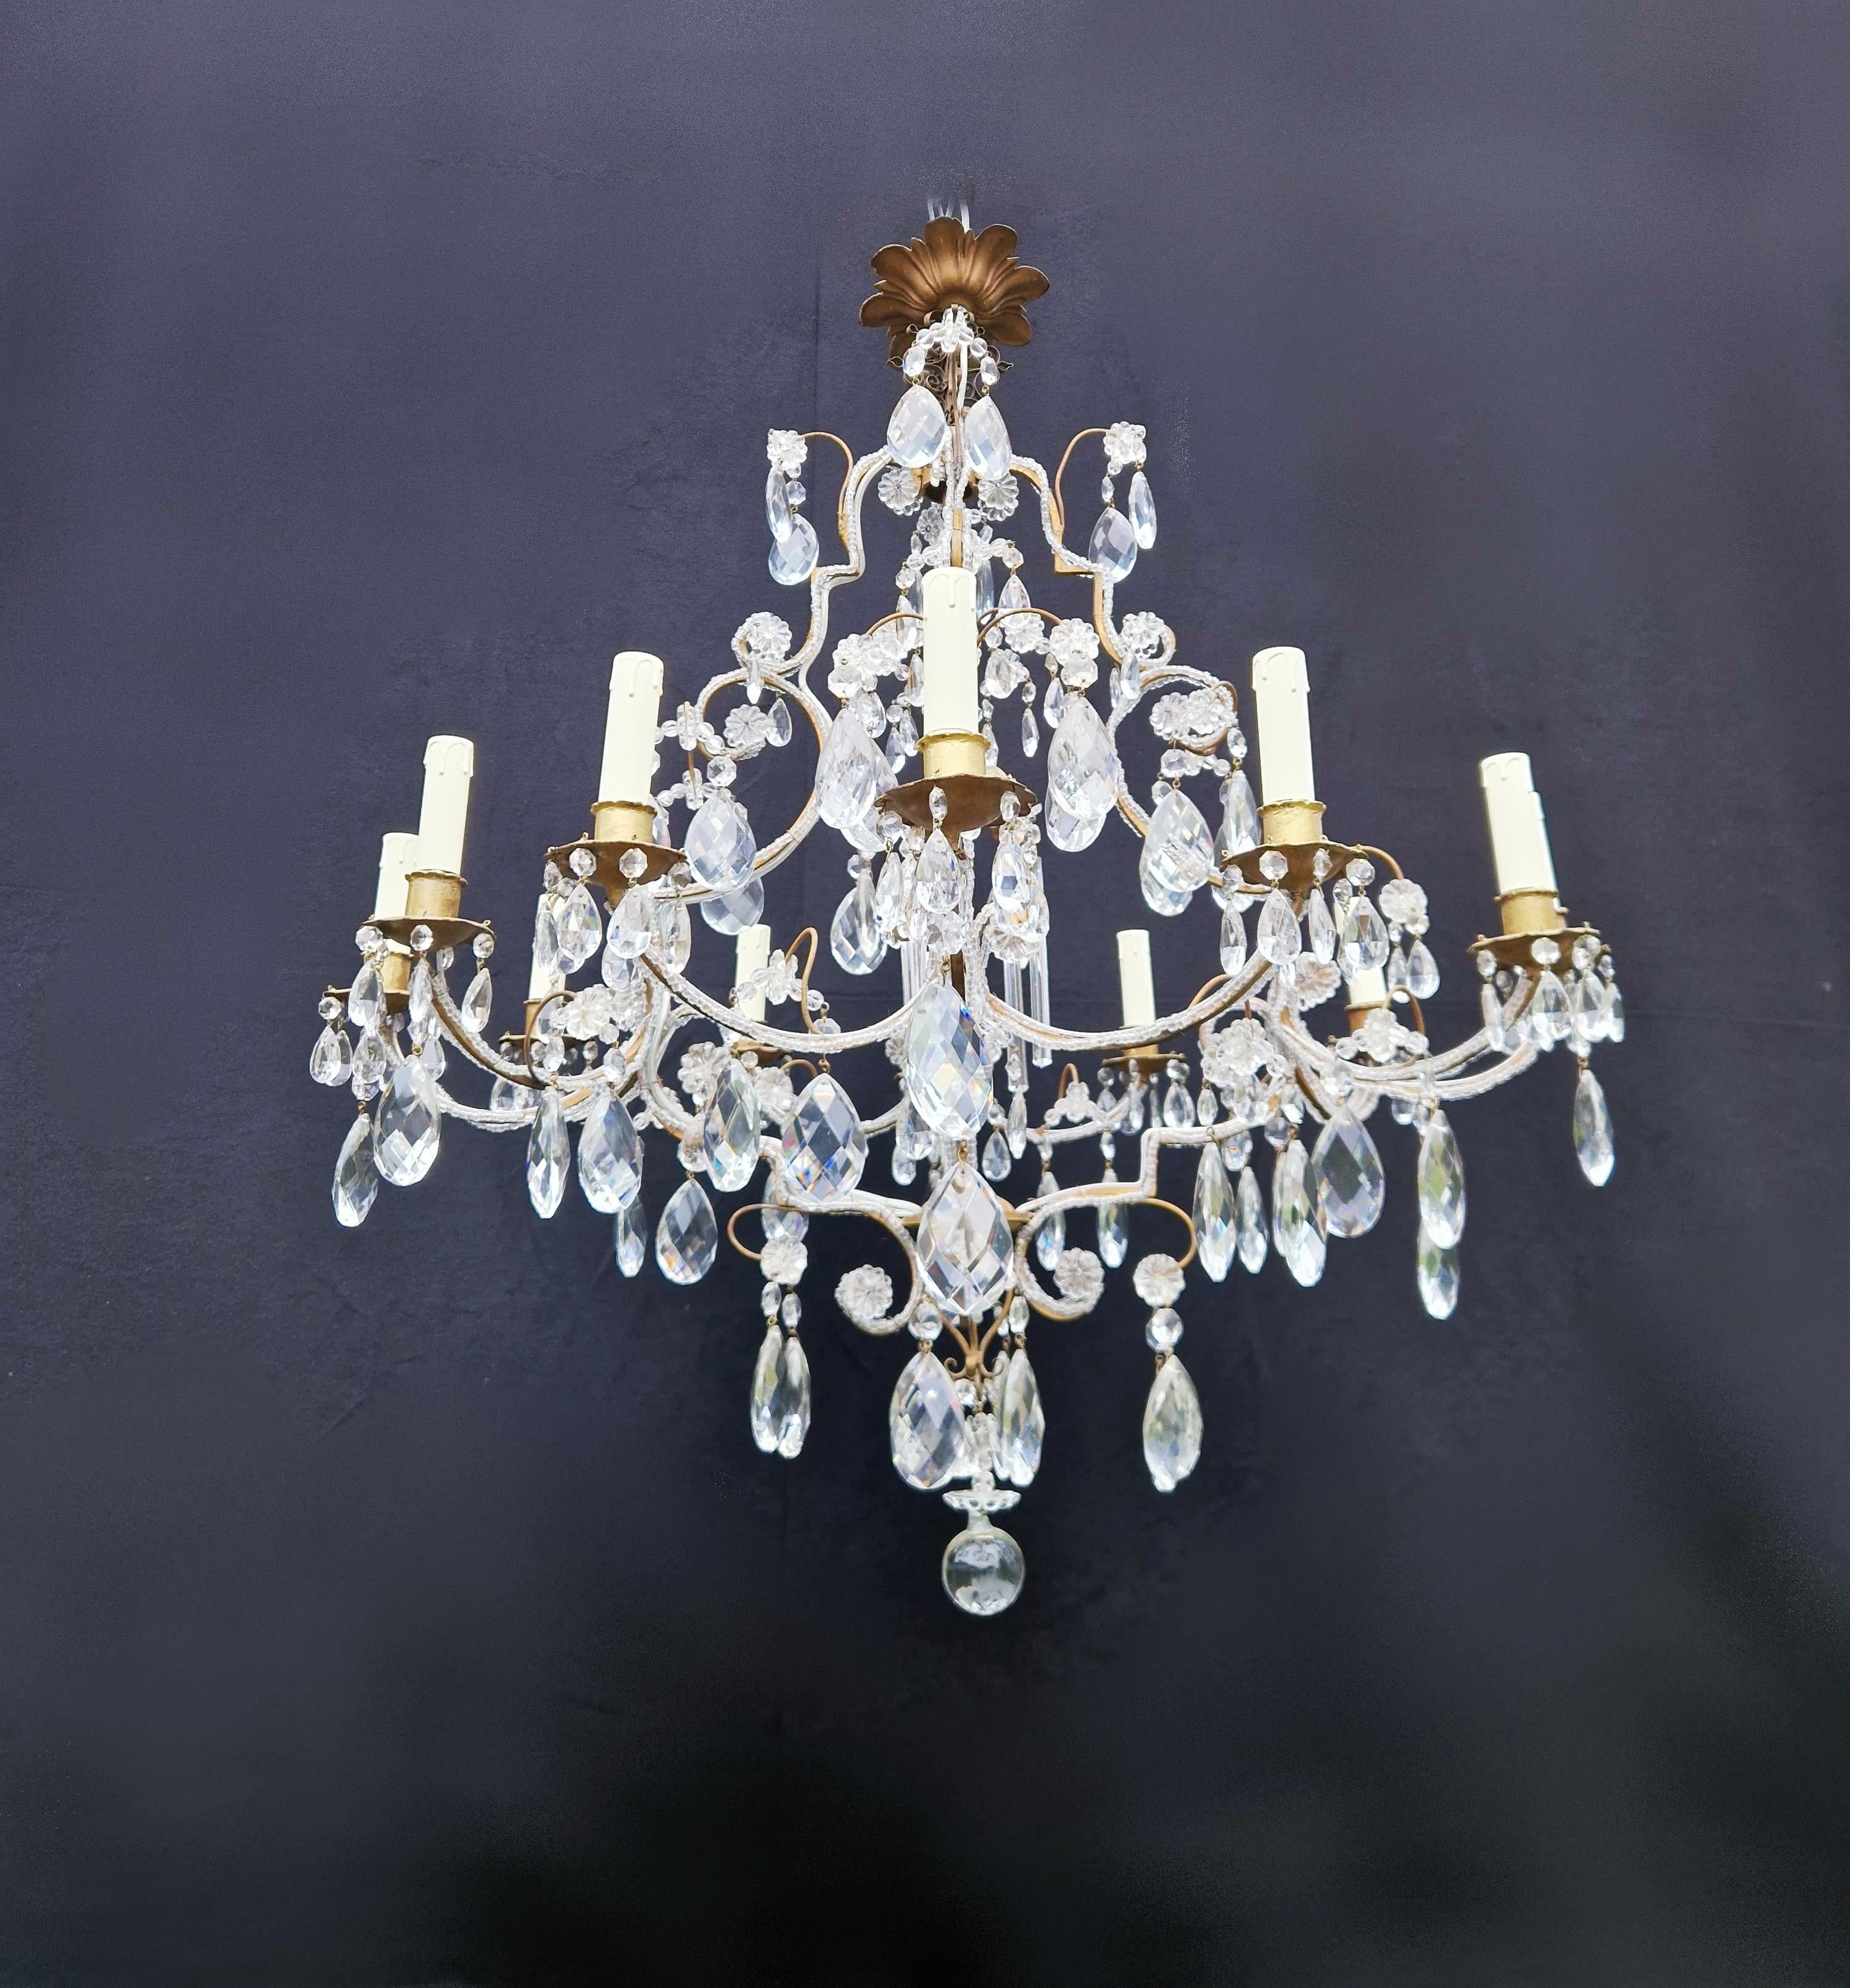 Brass Crystal Chandelier Antique Ceiling Lamp Lustre Art Nouveau Gold 3